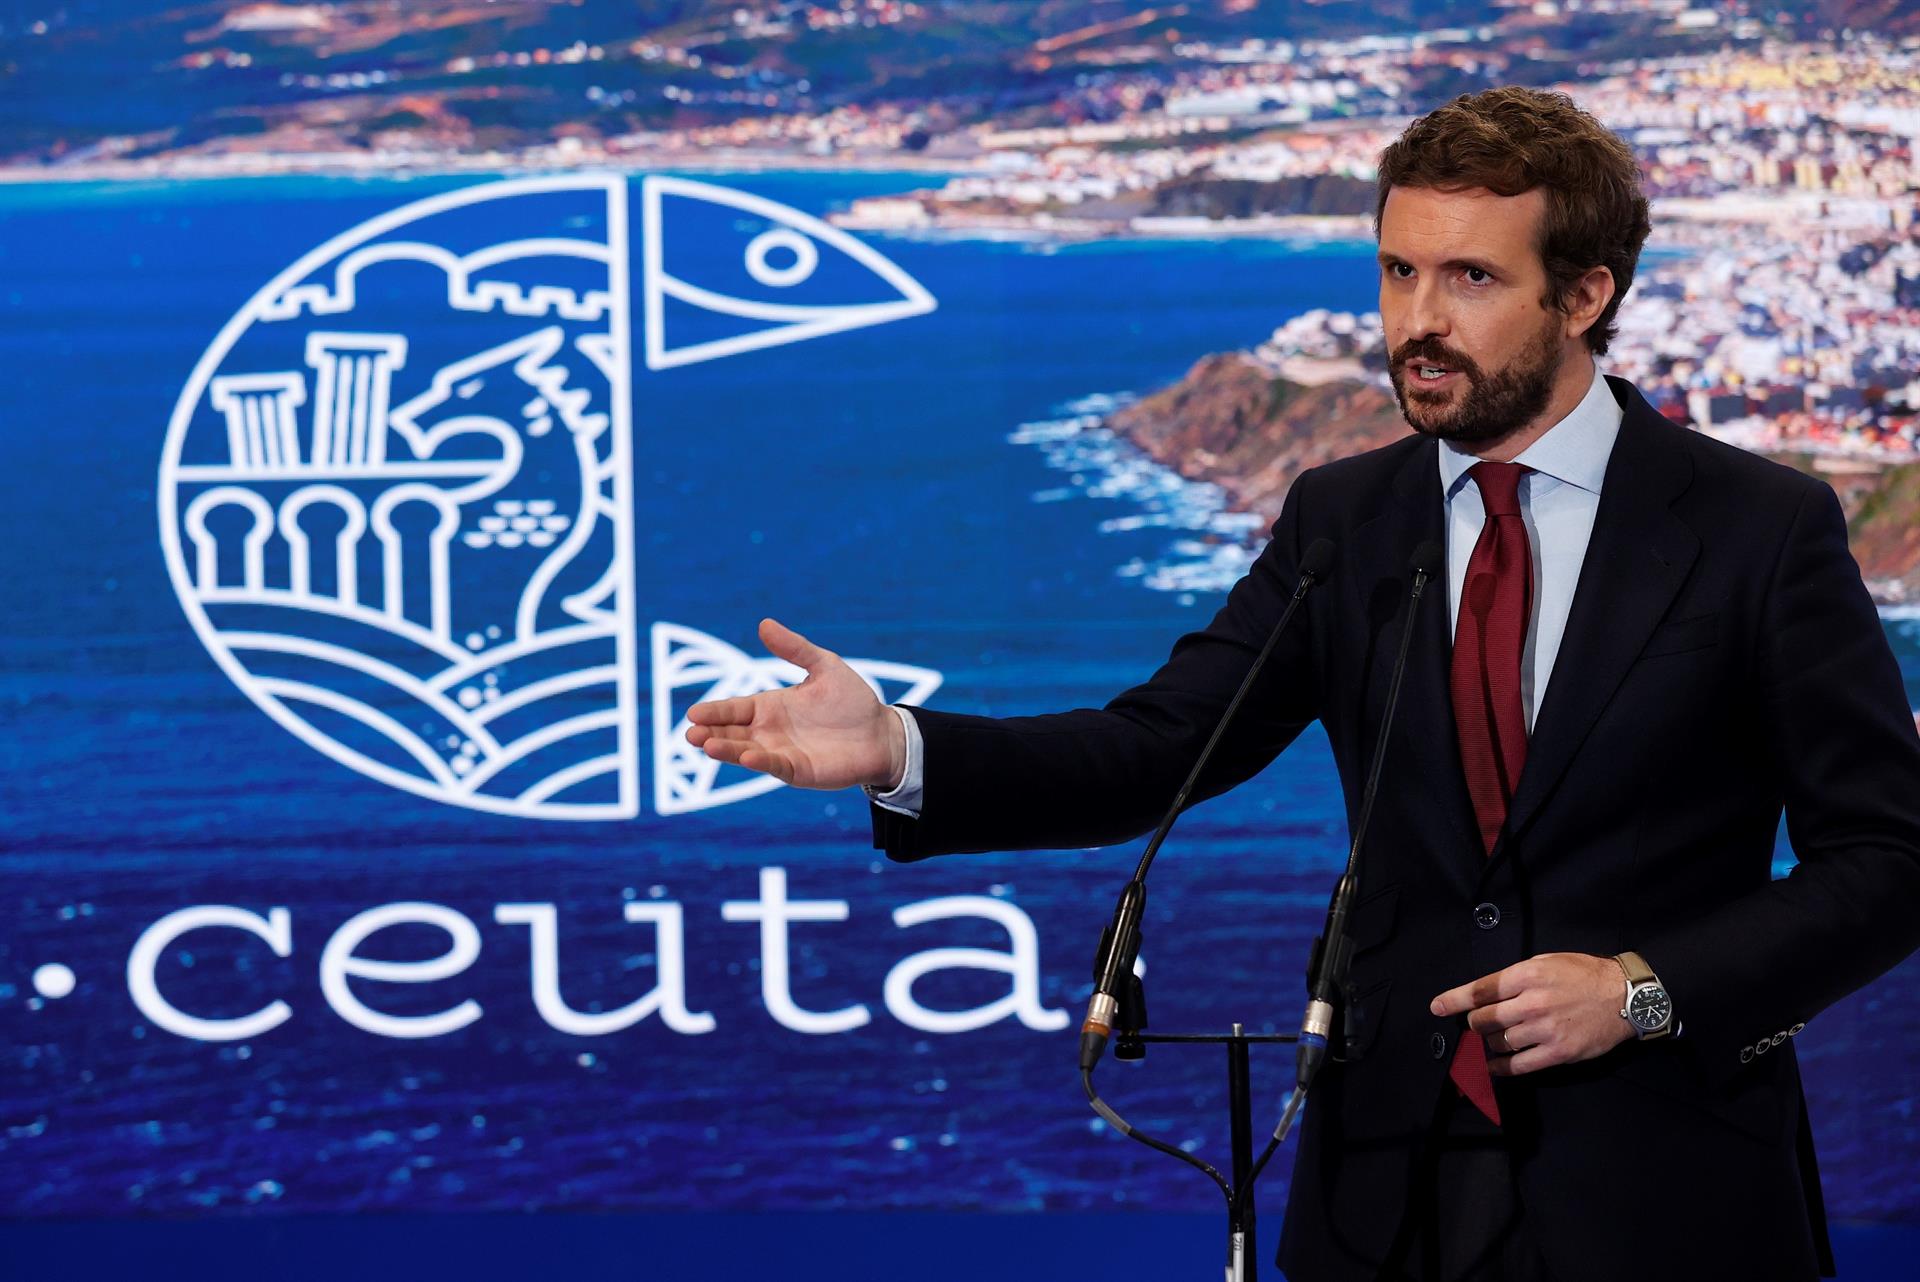 El presidente del Partido Popular (PP), Pablo Casado, hace declaraciones en su visita al stand de Ceuta de la Feria Internacional de Turismo FITUR que tiene lugar en las Instalaciones de IFEMA, en Madrid. EFE/Chema Moya